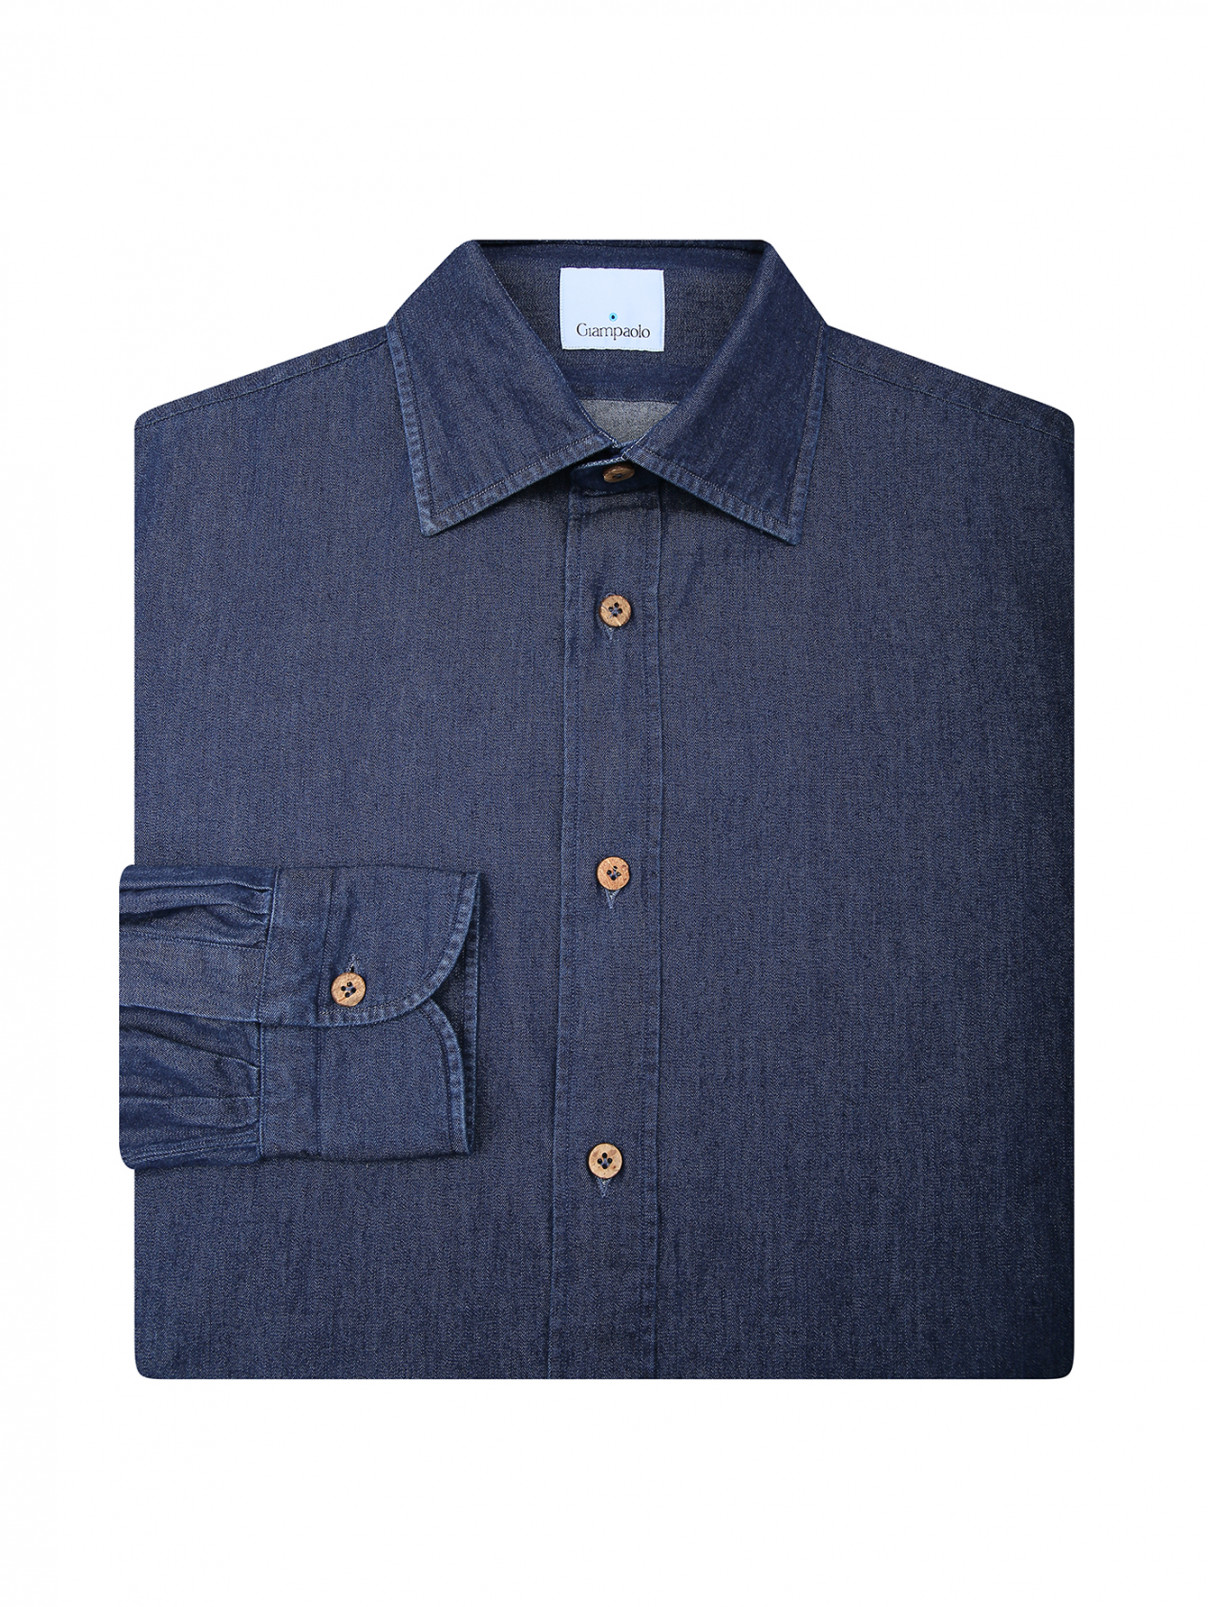 Рубашка из хлопка под деним Giampaolo  –  Общий вид  – Цвет:  Синий